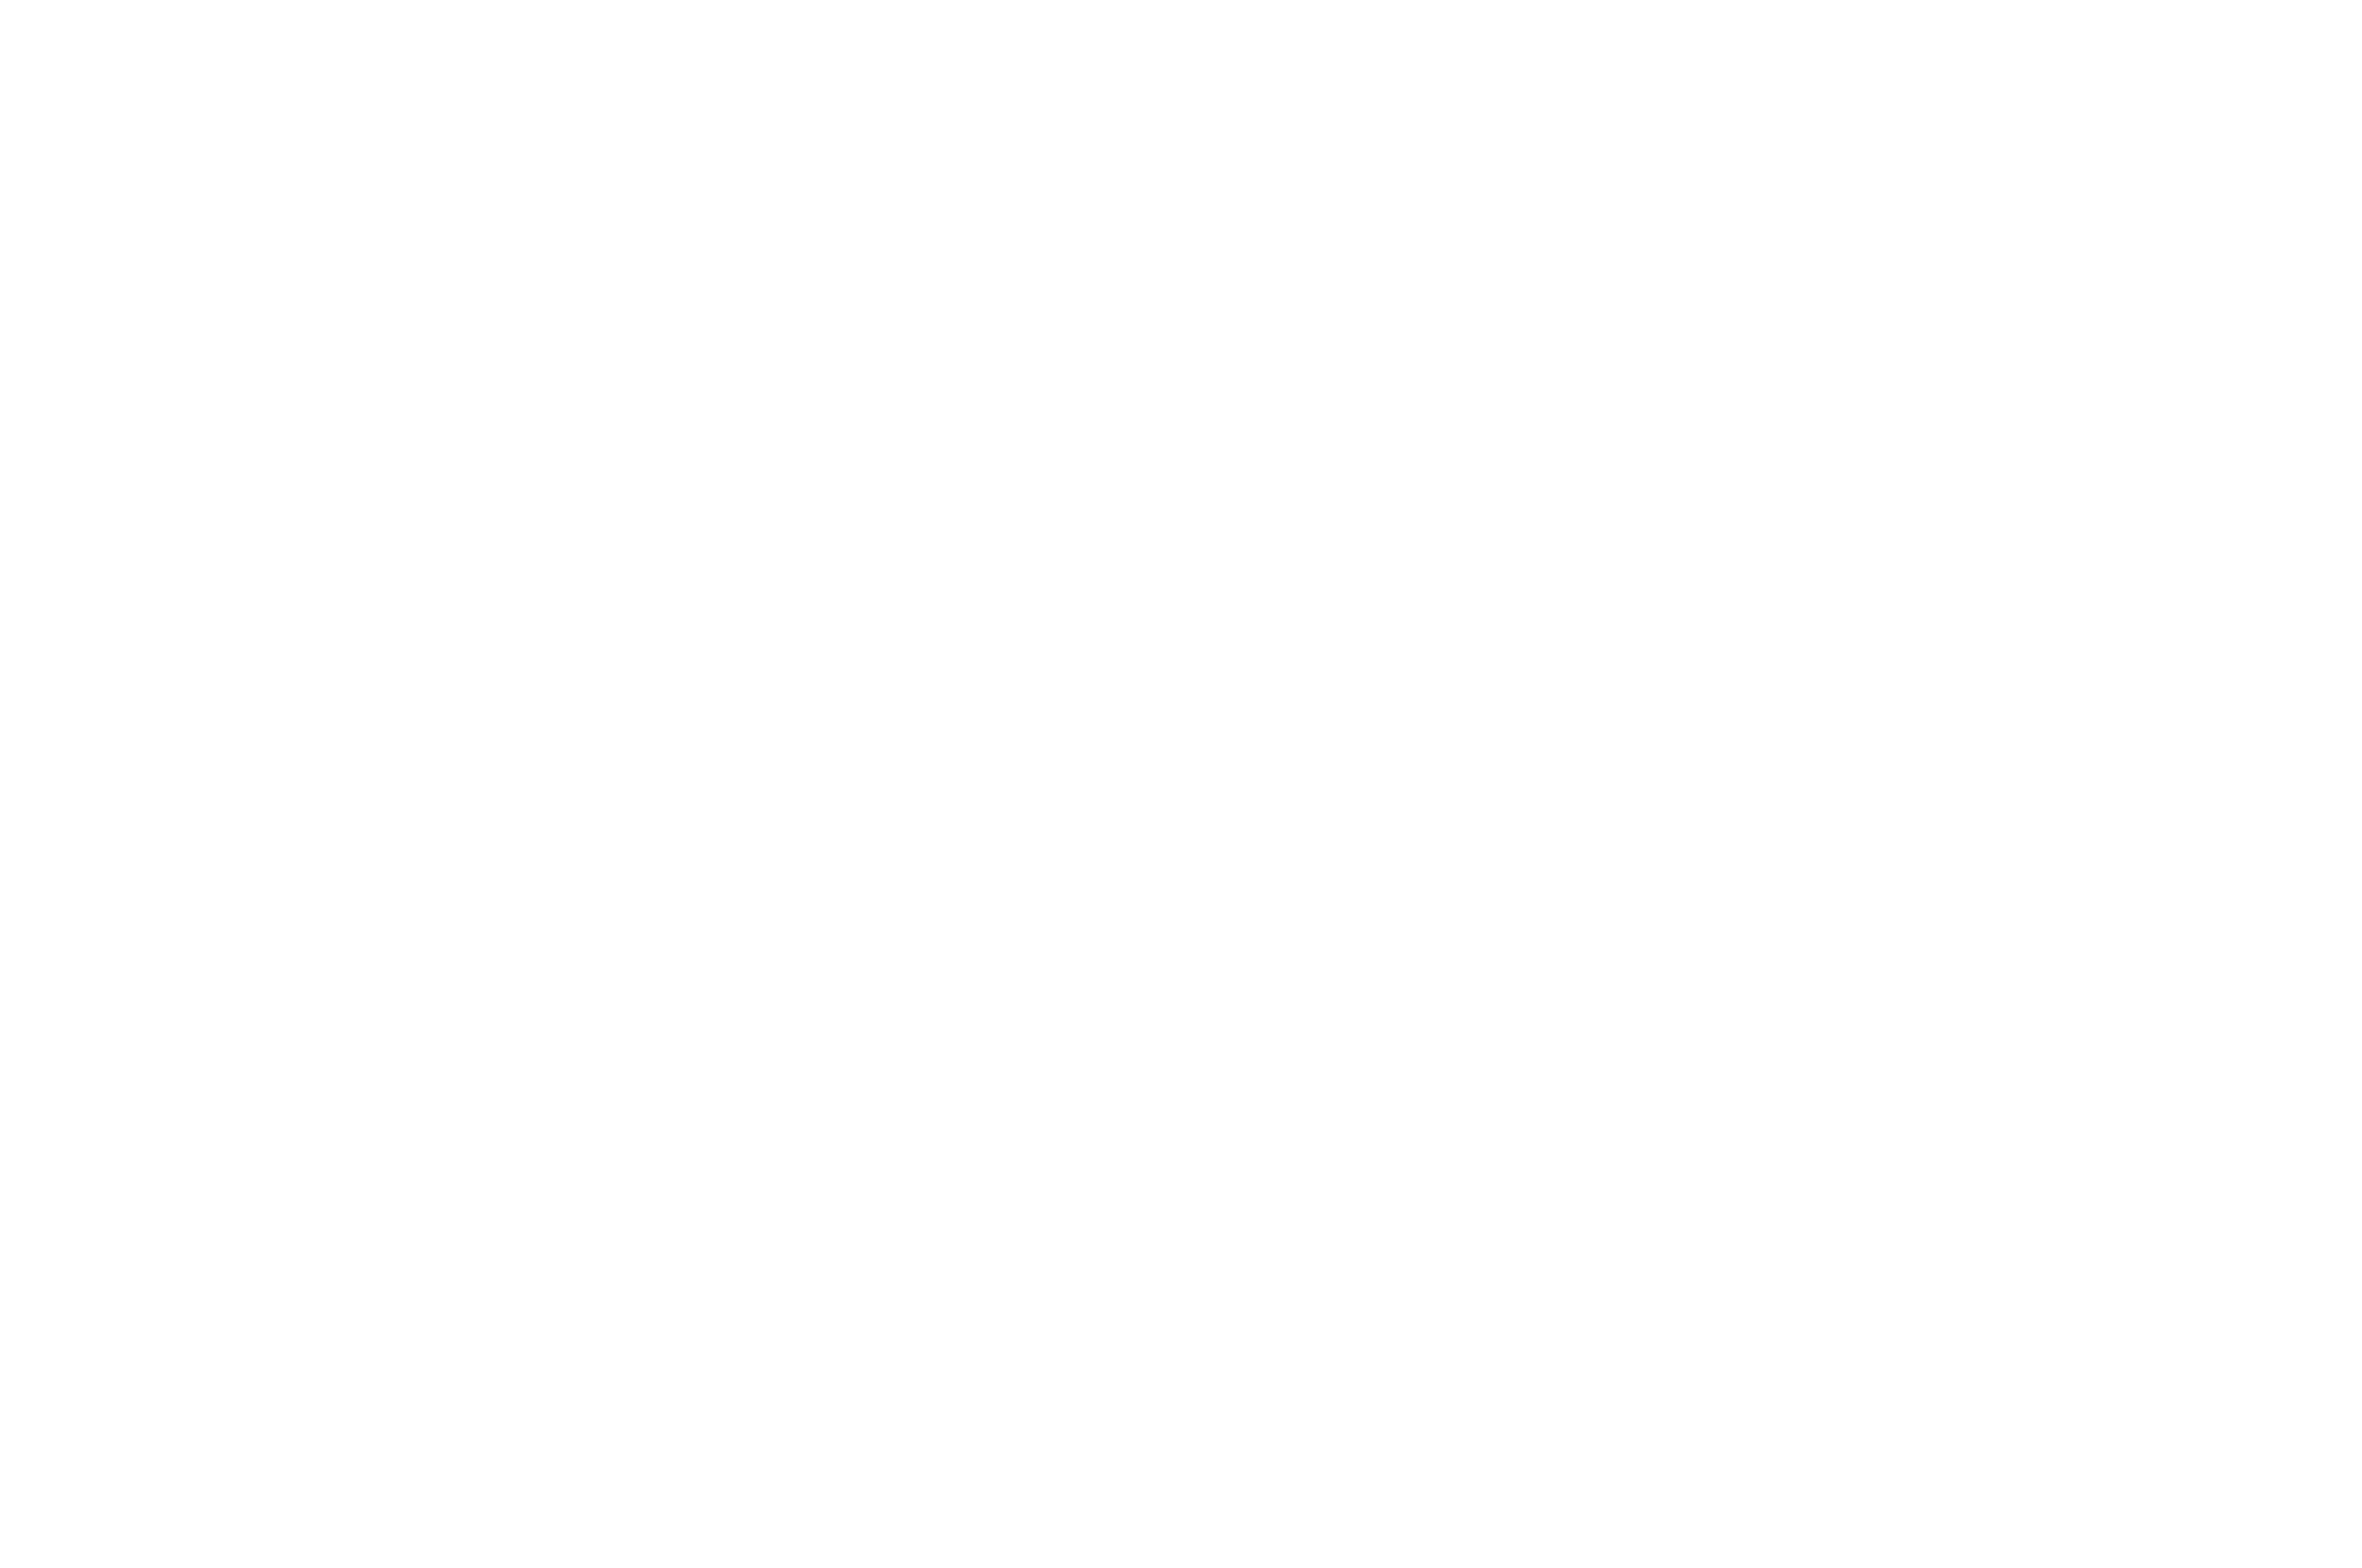 AWARDWINNER-MorehouseCollegeHumanRightsFilmFestival-2021BESTFULLLENGTHDOCUMENTARY (1).png